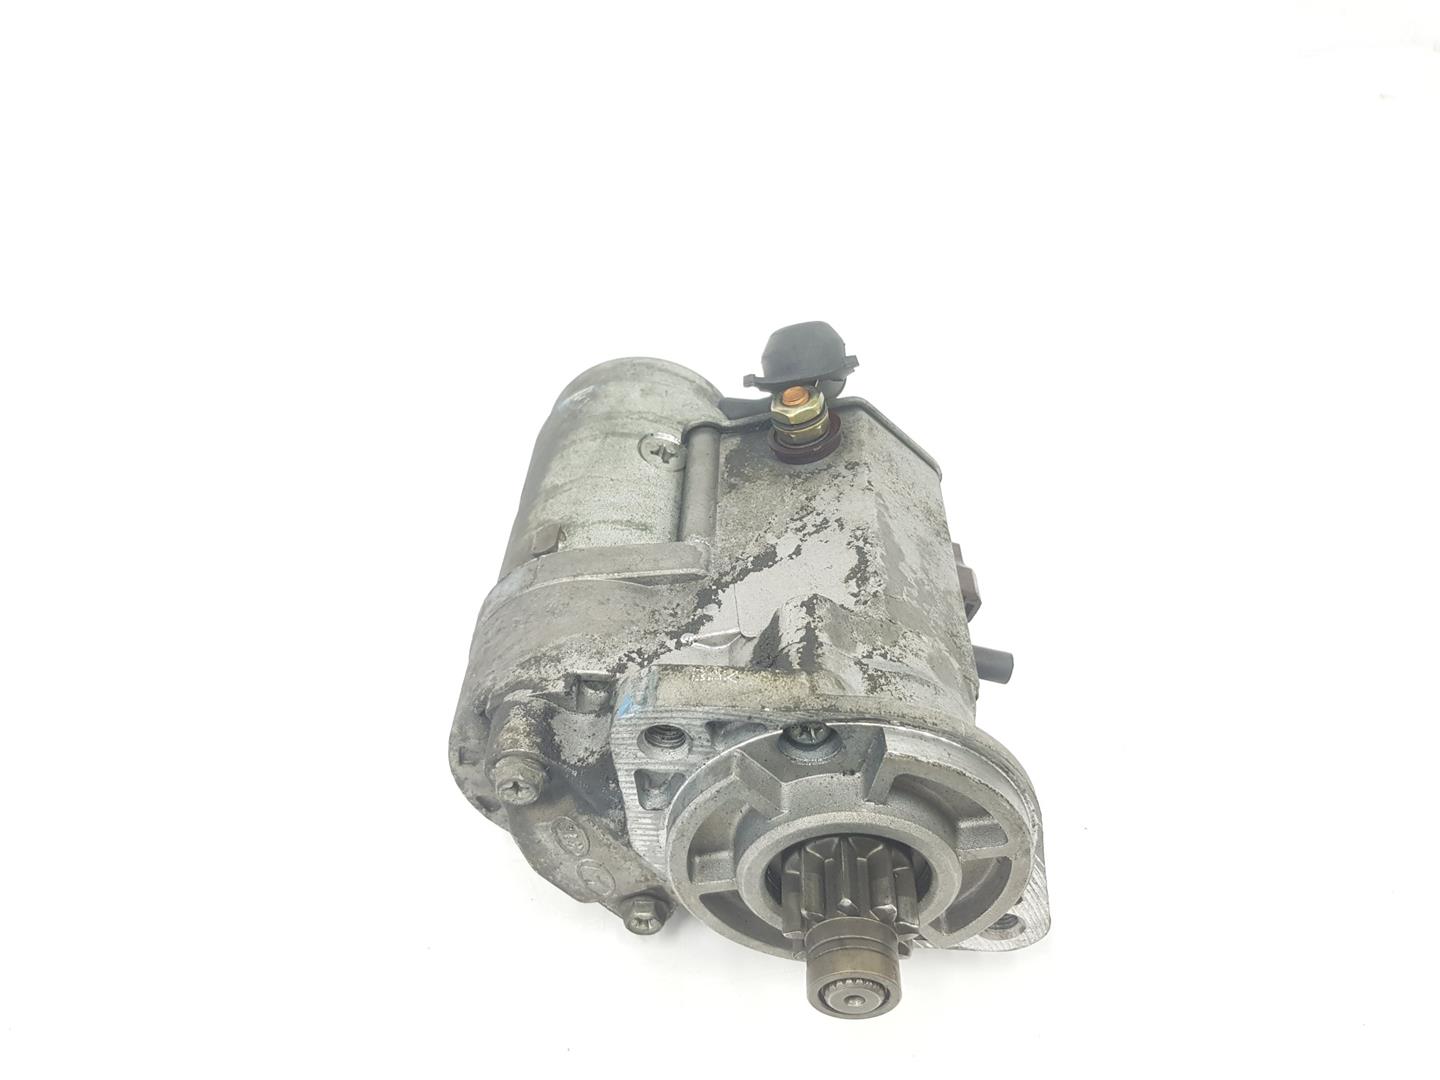 HYUNDAI Santa Fe CM (2006-2013) Starter Motor 3610027010, 3610027010 24229117